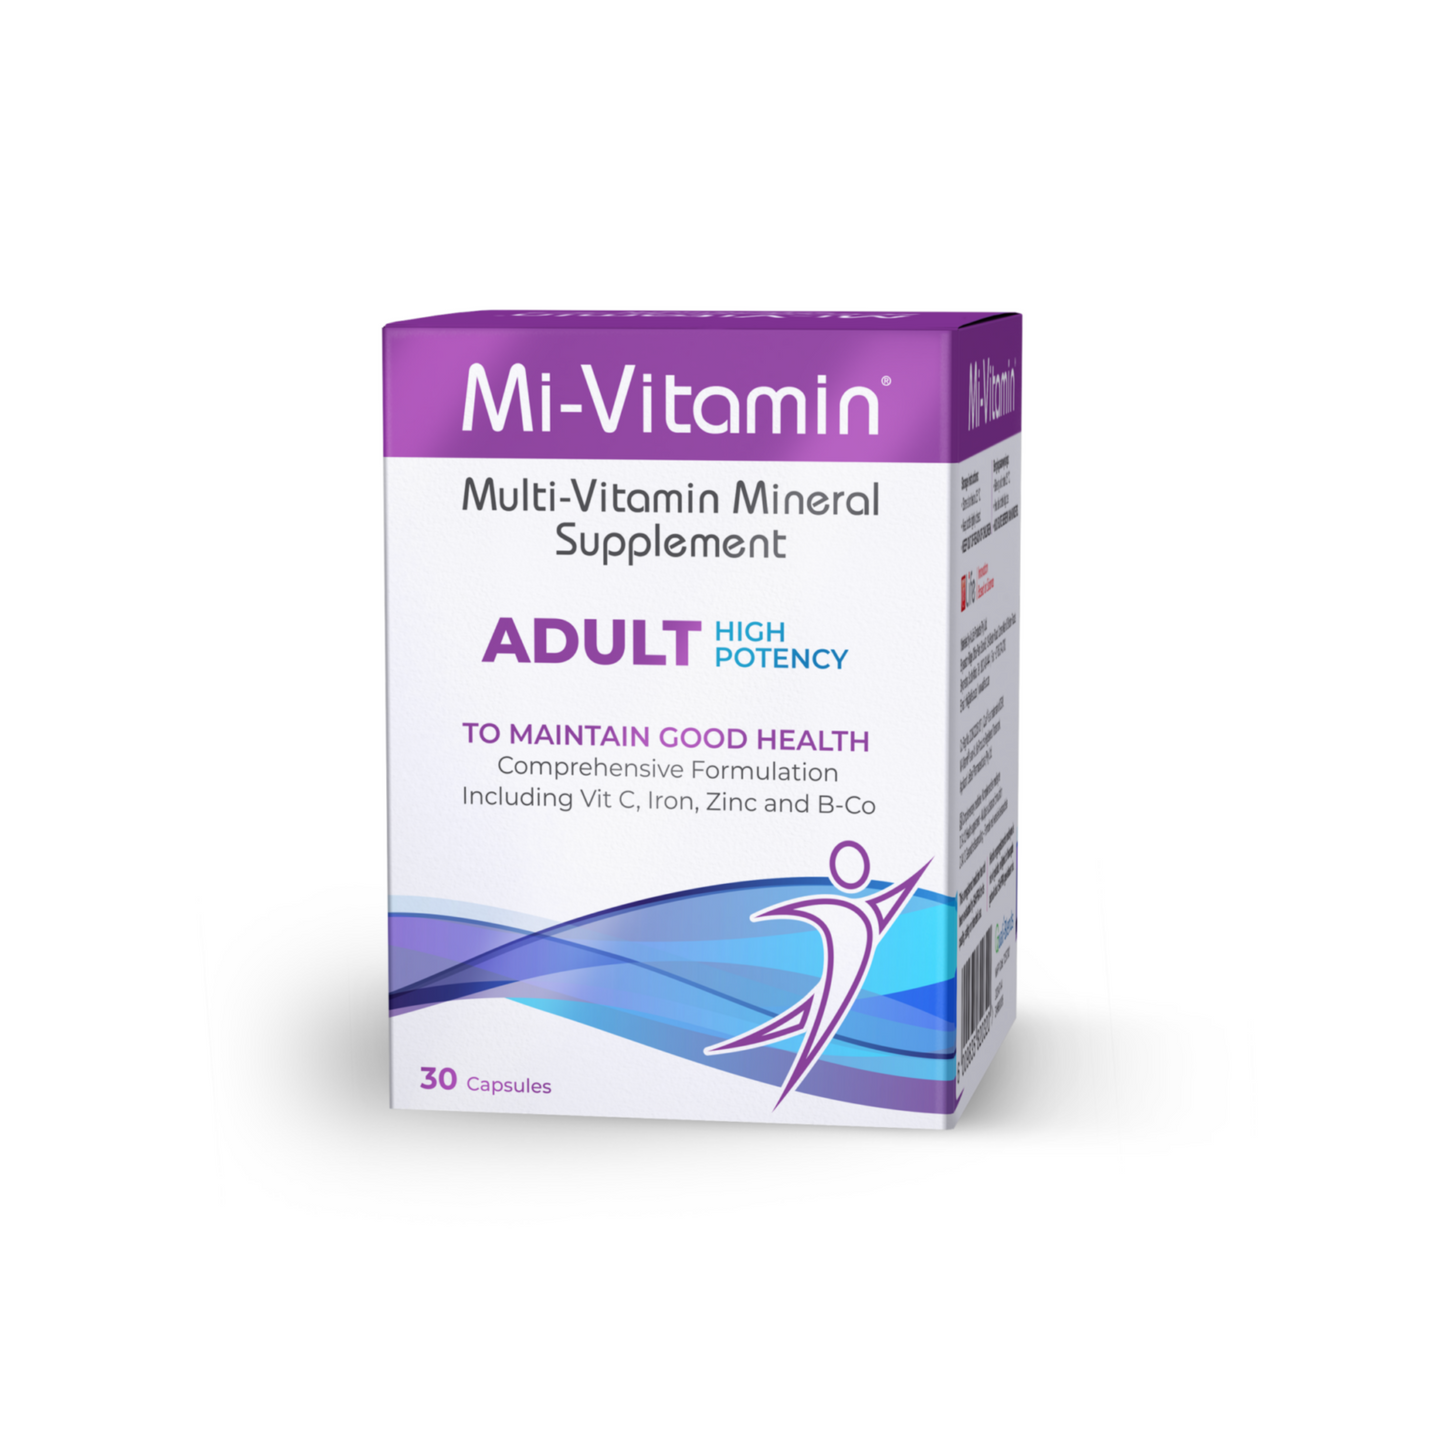 Mi-Vitamin